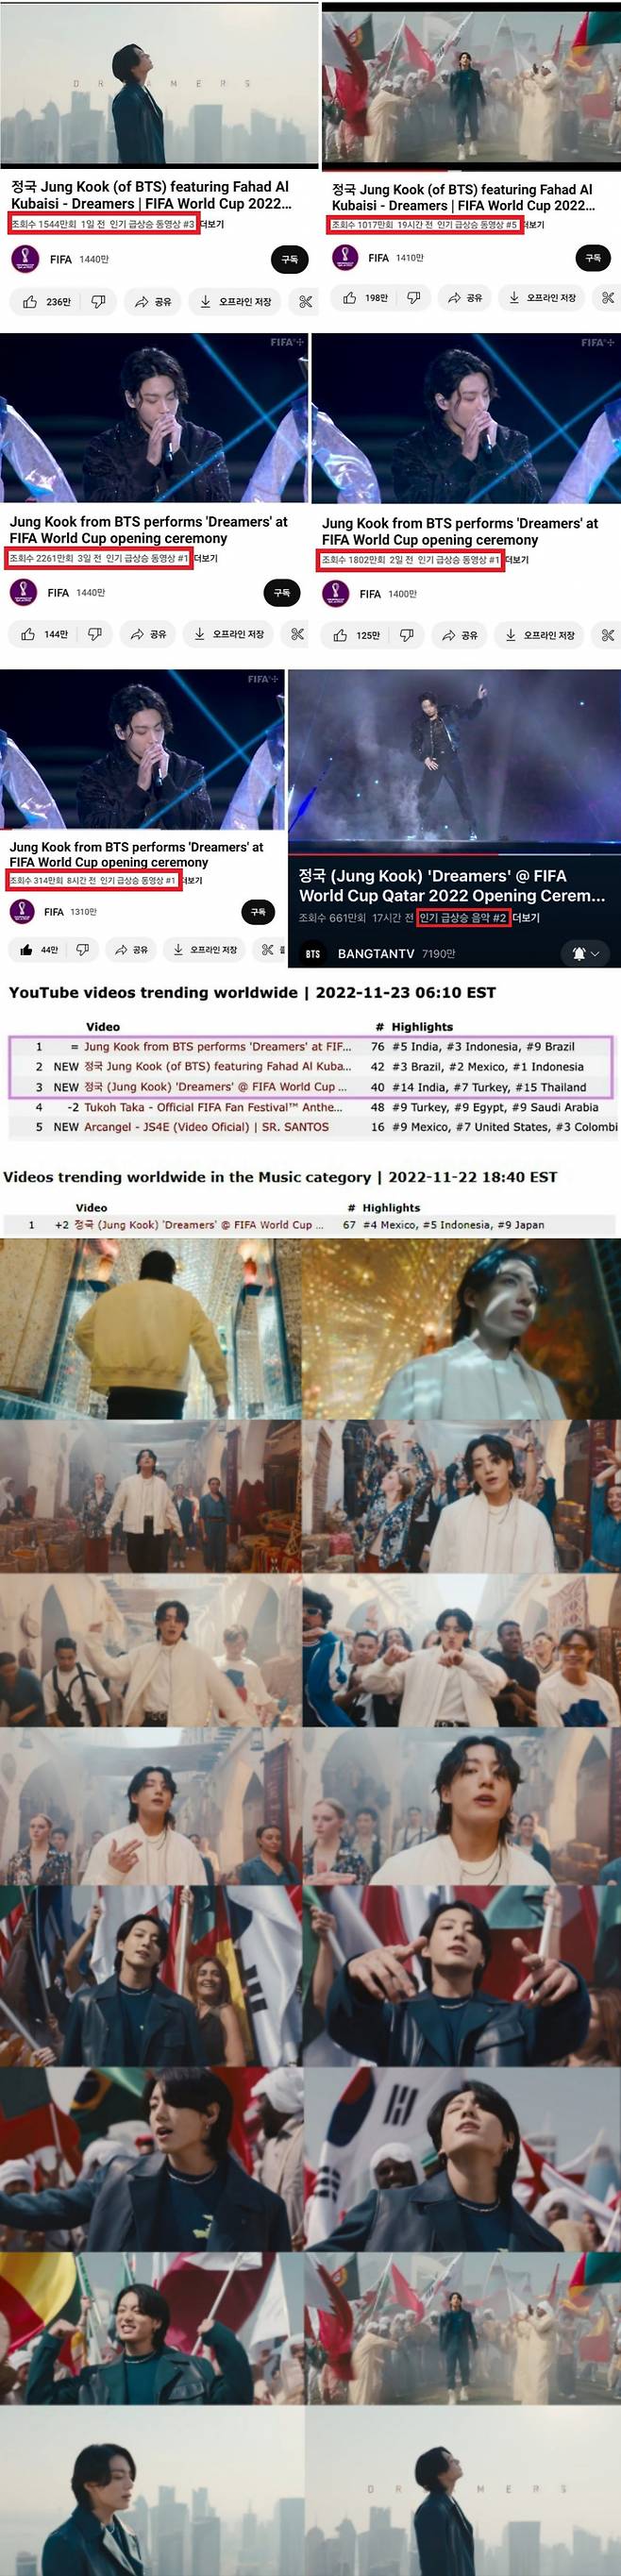 방탄소년단 정국 월드컵 'Dreamers' 공식 영상, 유튜브 '전세계 인기 동영상' 1위·2위·3위 '올킬'